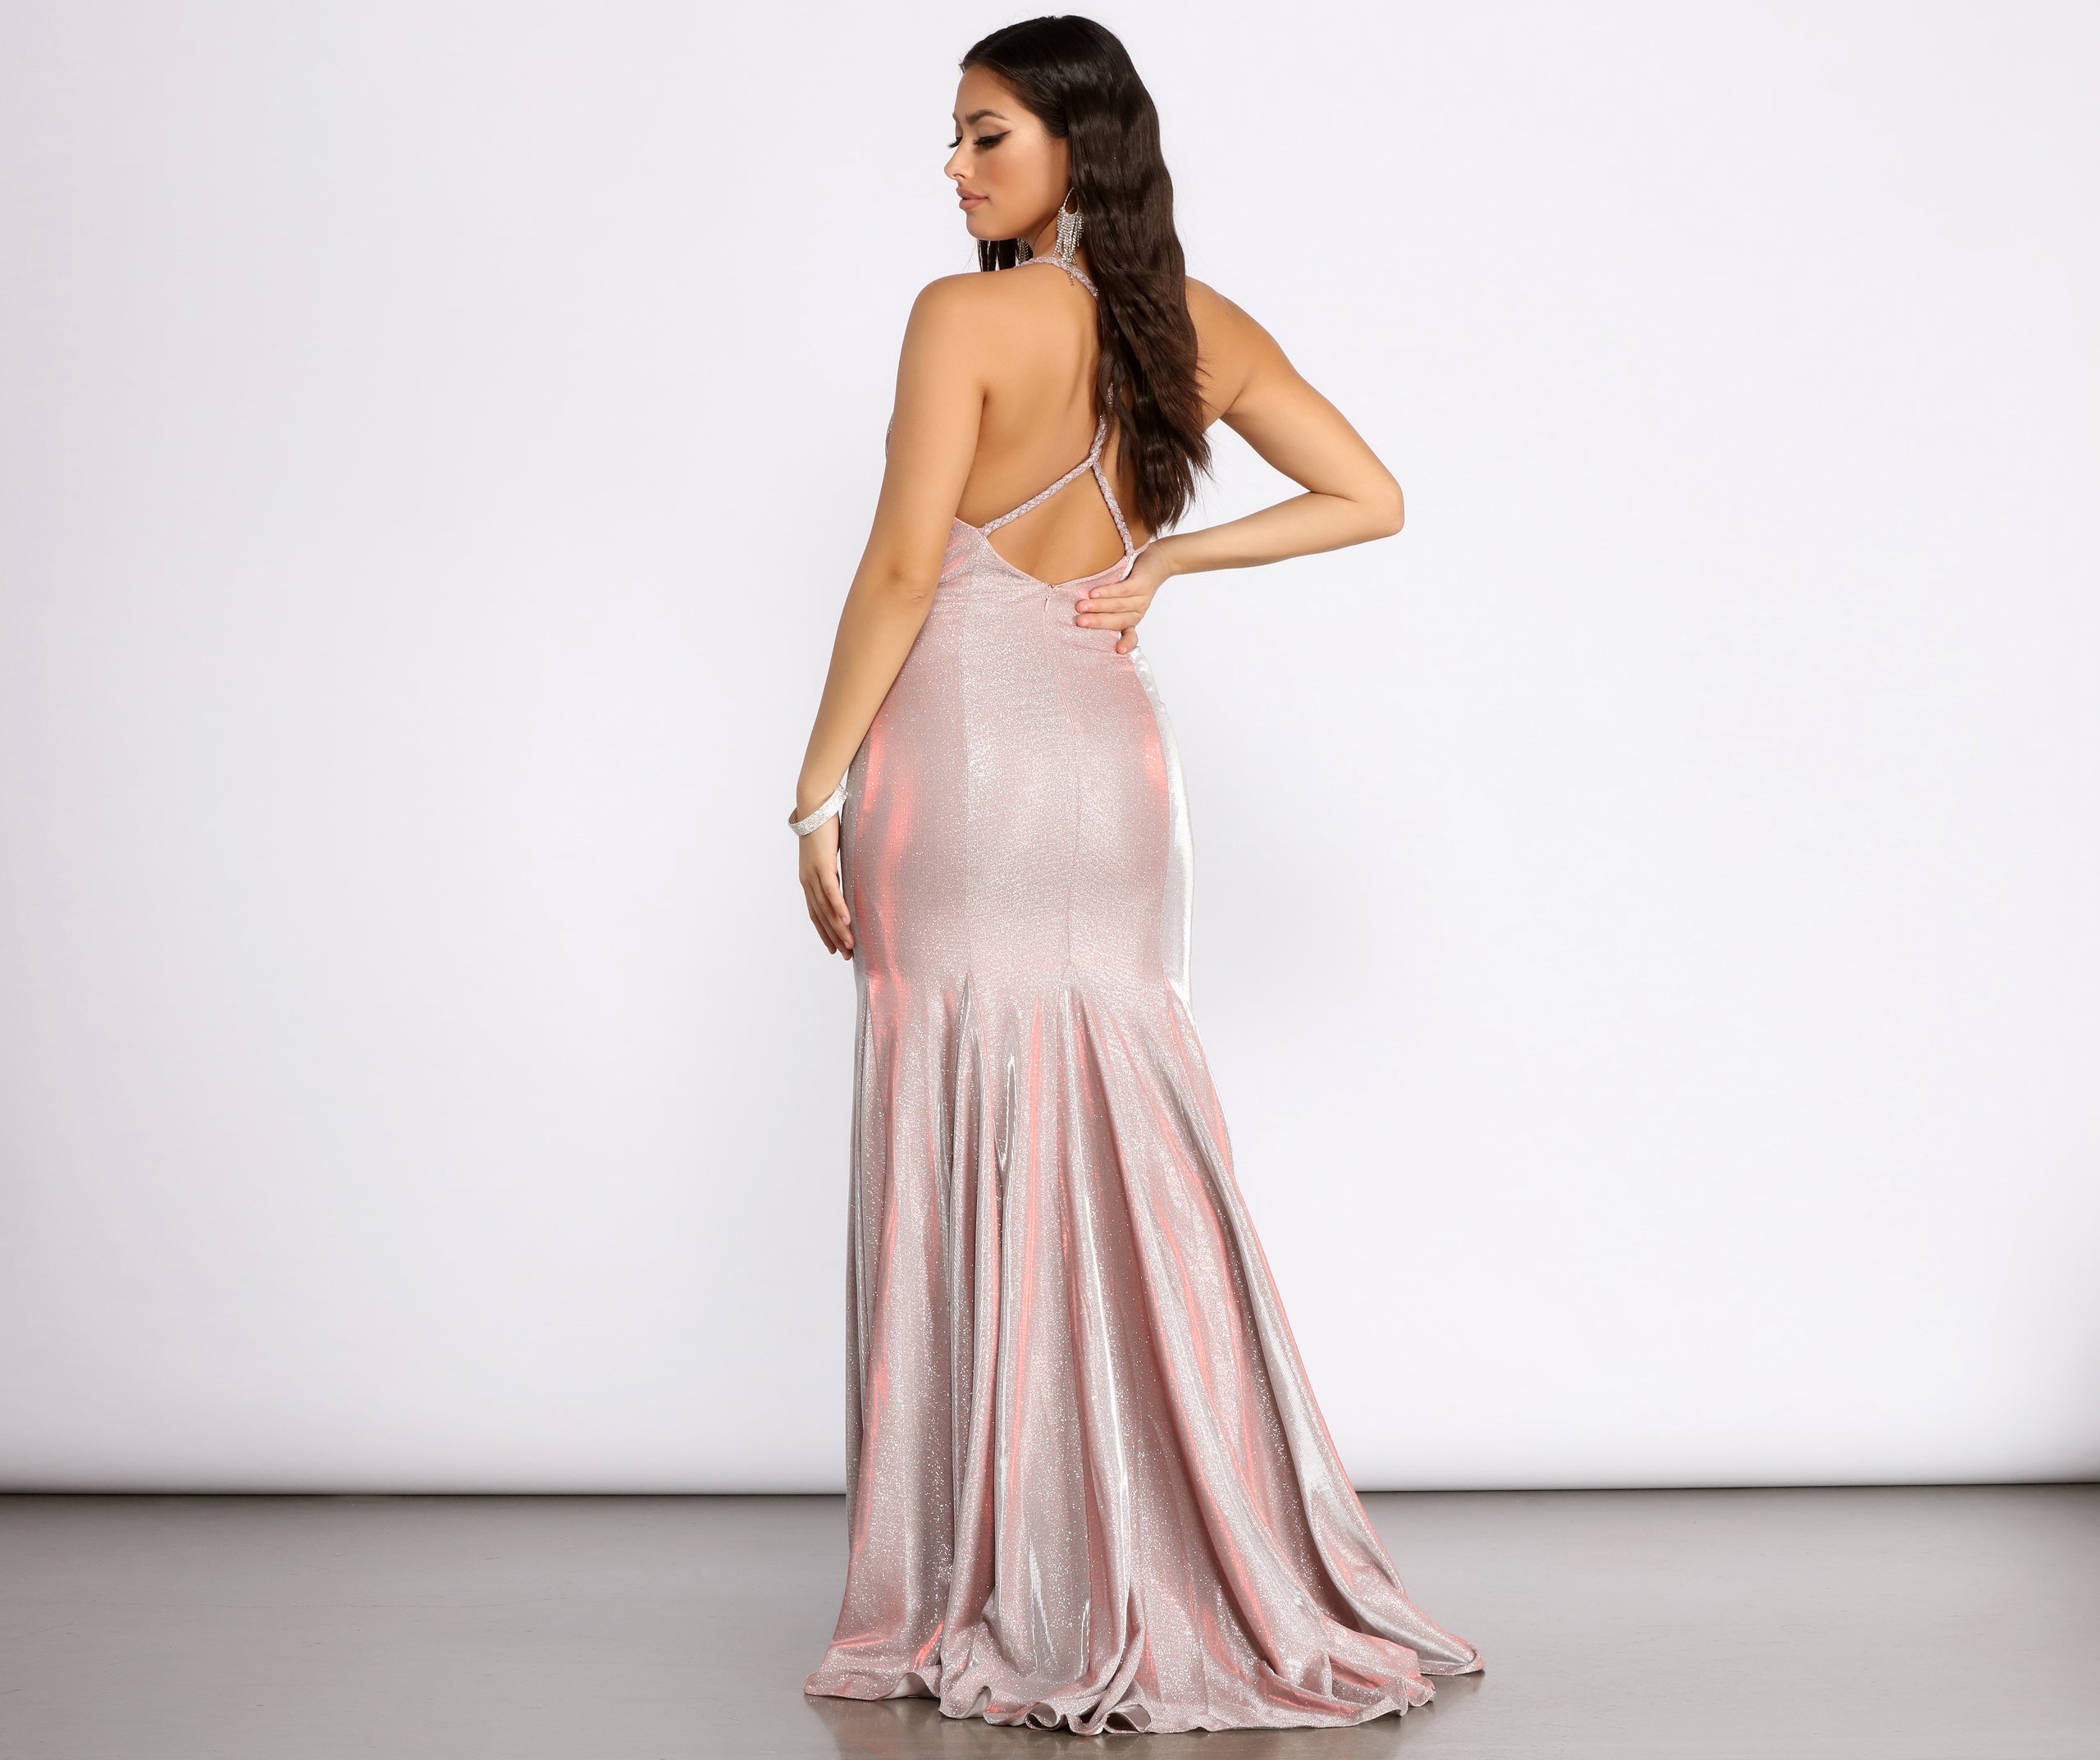 Evita Formal Glitter Mermaid Dress